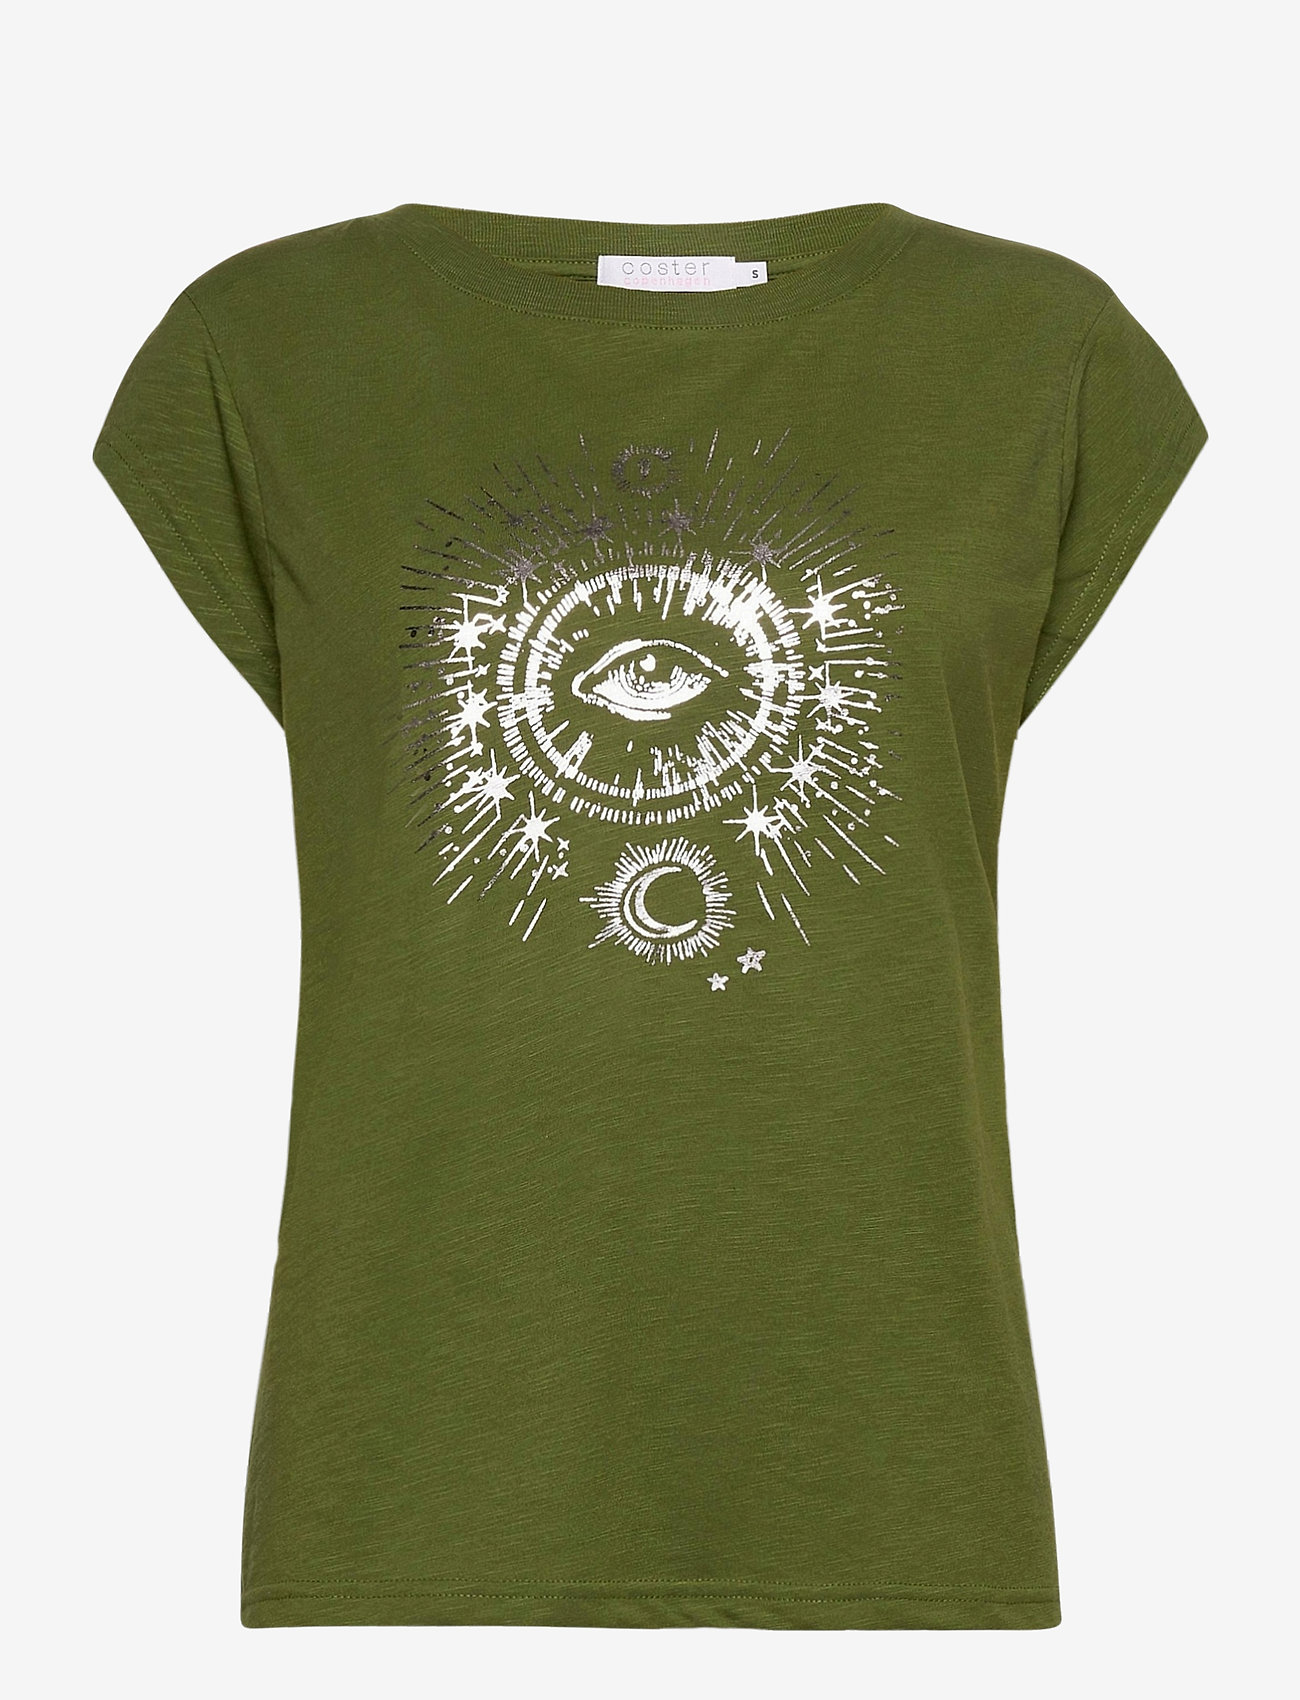 Coster Copenhagen - T-shirt w. tarot print - t-skjorter - forest green - 0